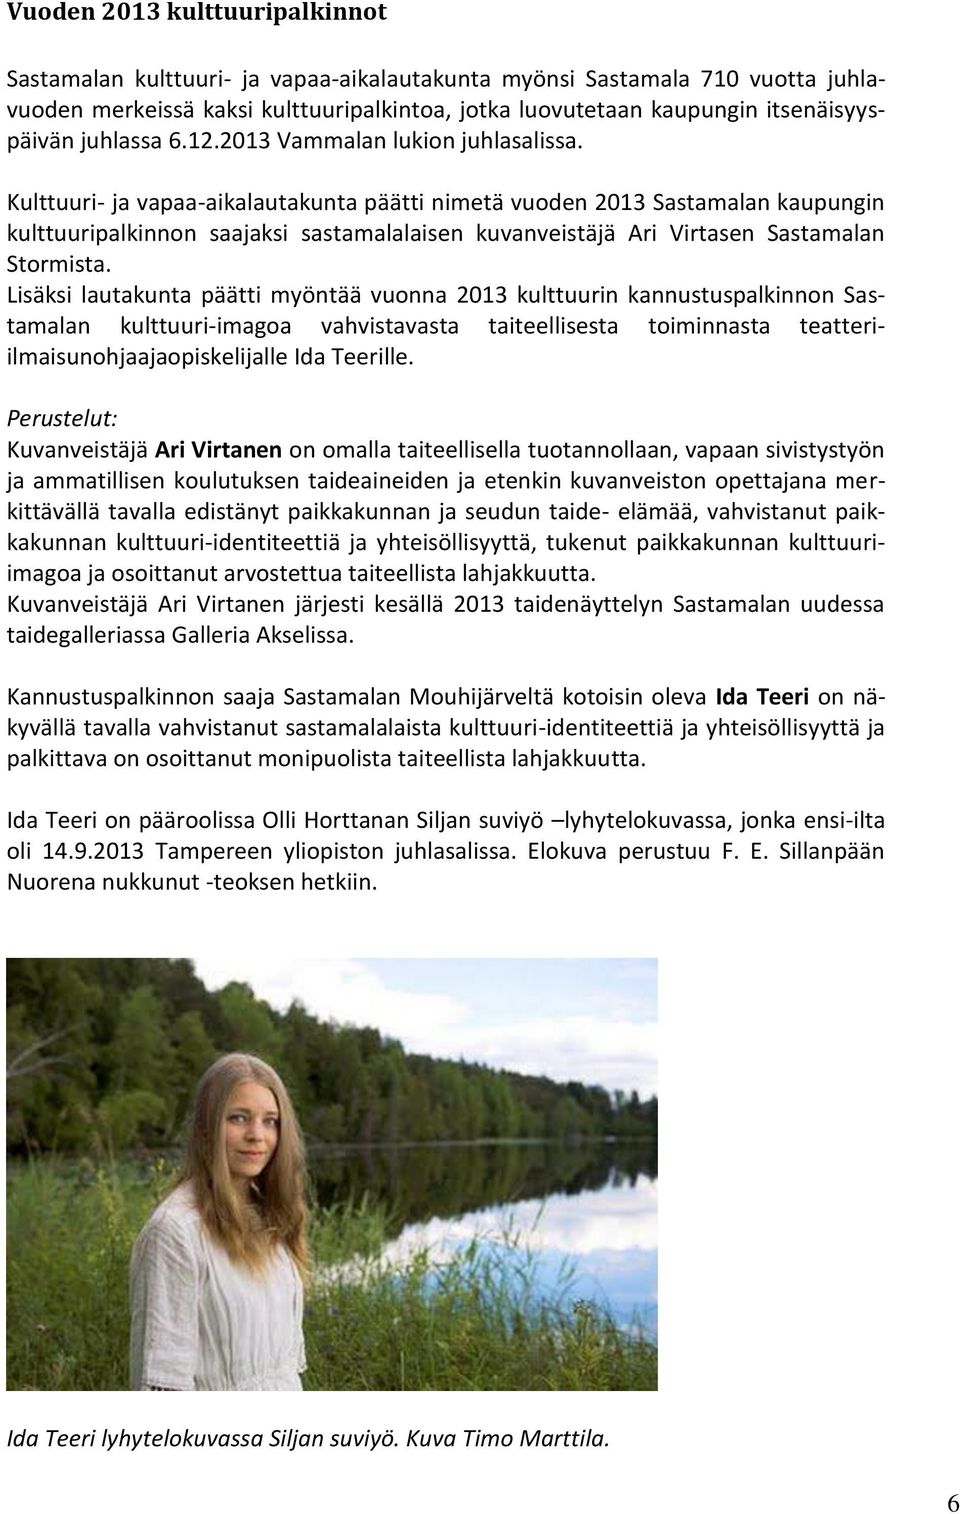 Kulttuuri- ja vapaa-aikalautakunta päätti nimetä vuoden 2013 Sastamalan kaupungin kulttuuripalkinnon saajaksi sastamalalaisen kuvanveistäjä Ari Virtasen Sastamalan Stormista.